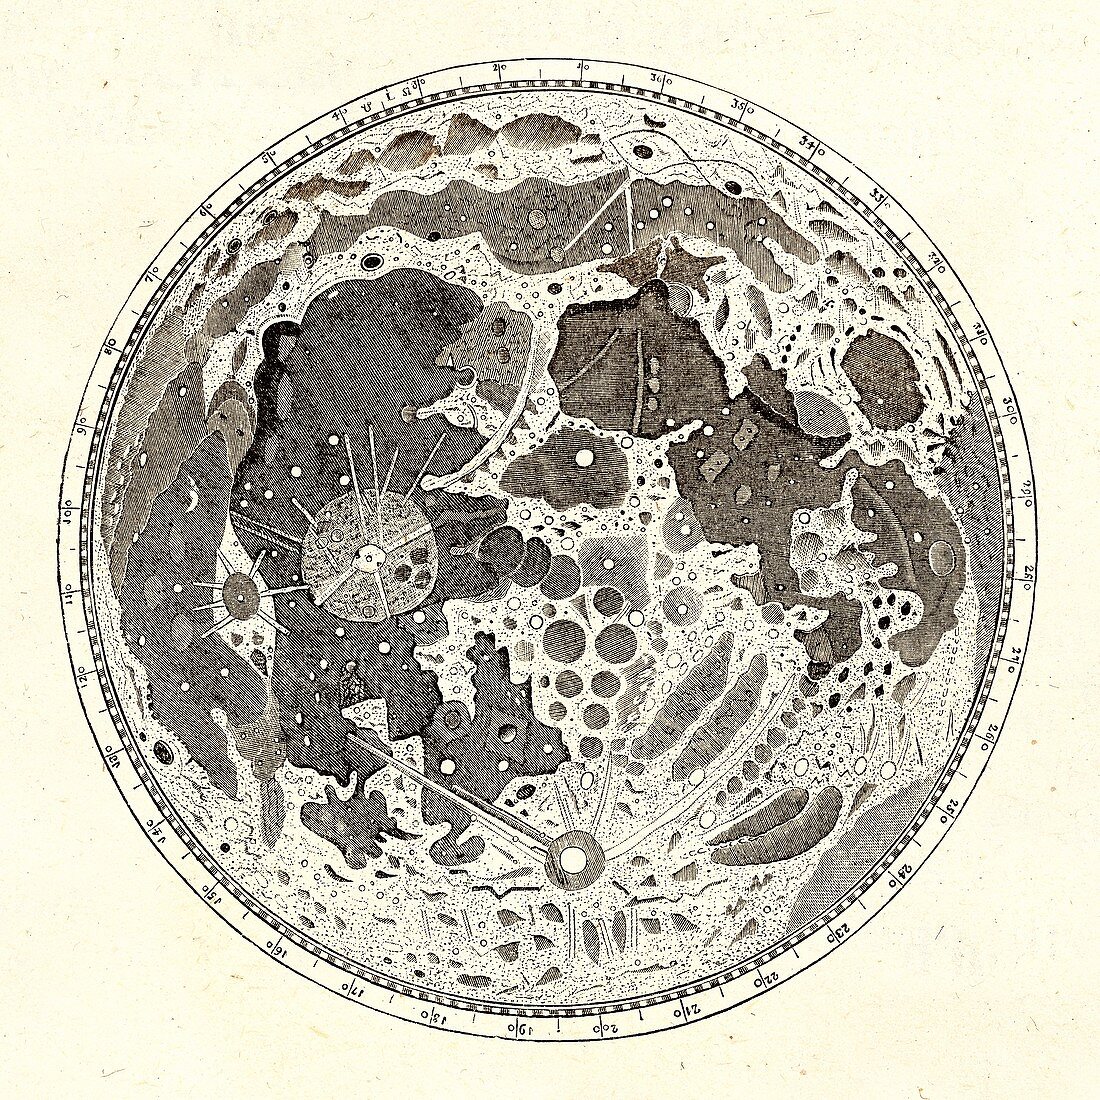 Hevelius's Moon map, 1647